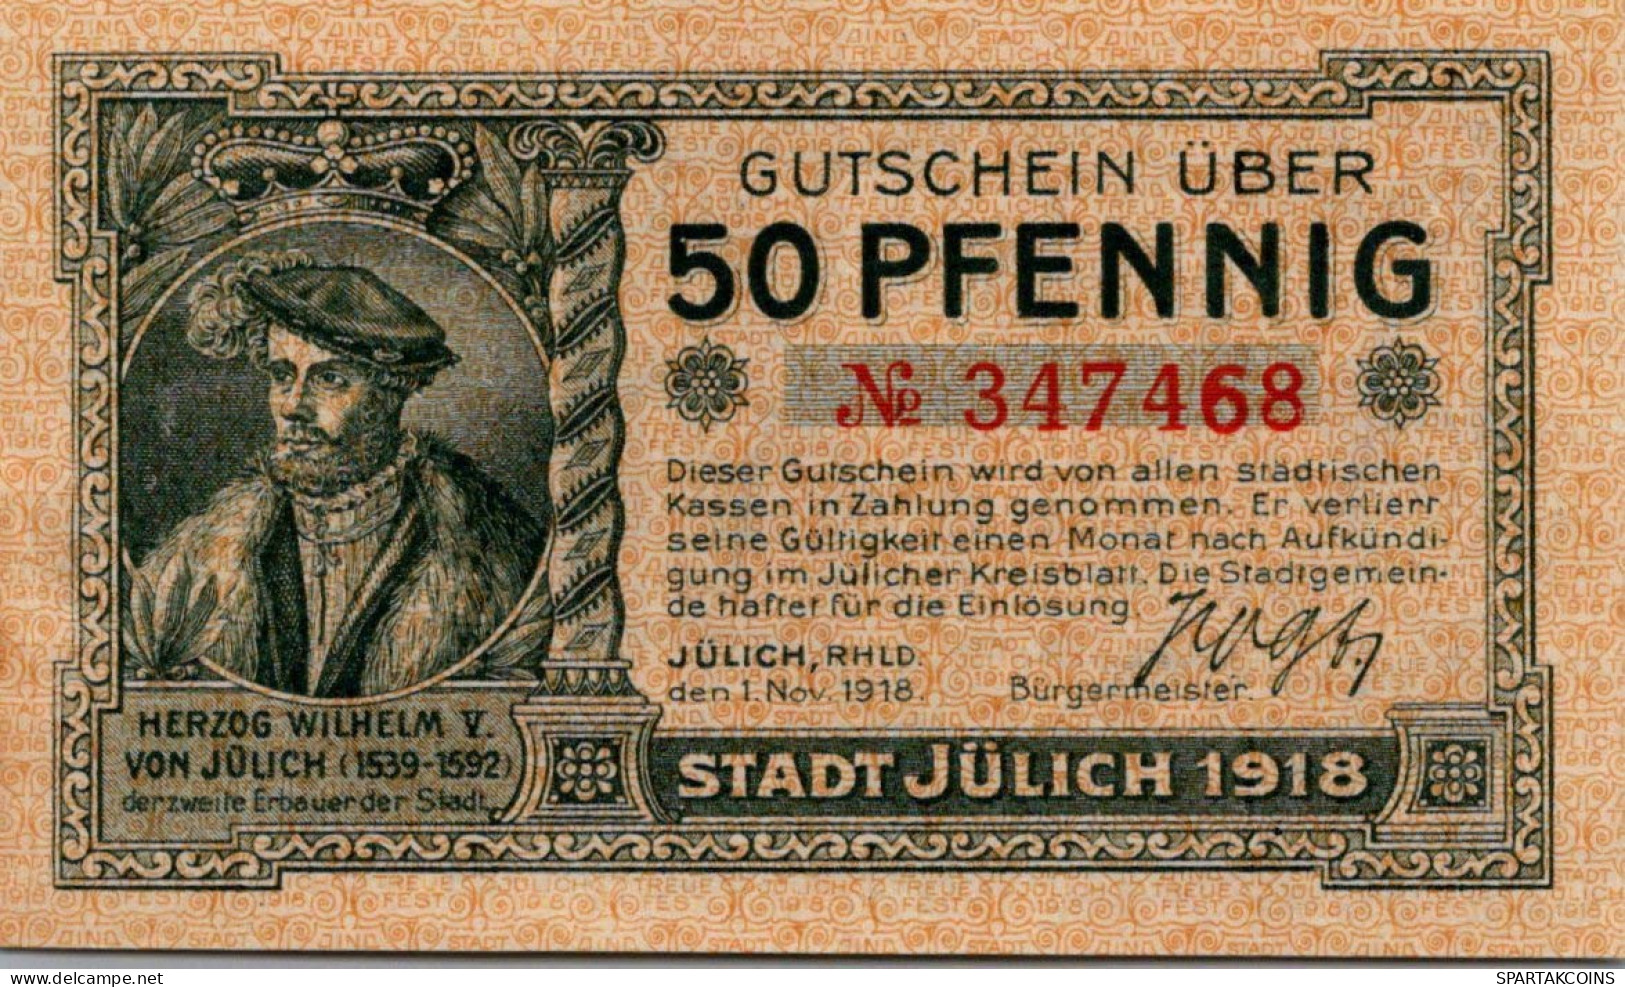 50 PFENNIG 1918 Stadt JÜLICH Rhine DEUTSCHLAND Notgeld Banknote #PD456 - [11] Local Banknote Issues